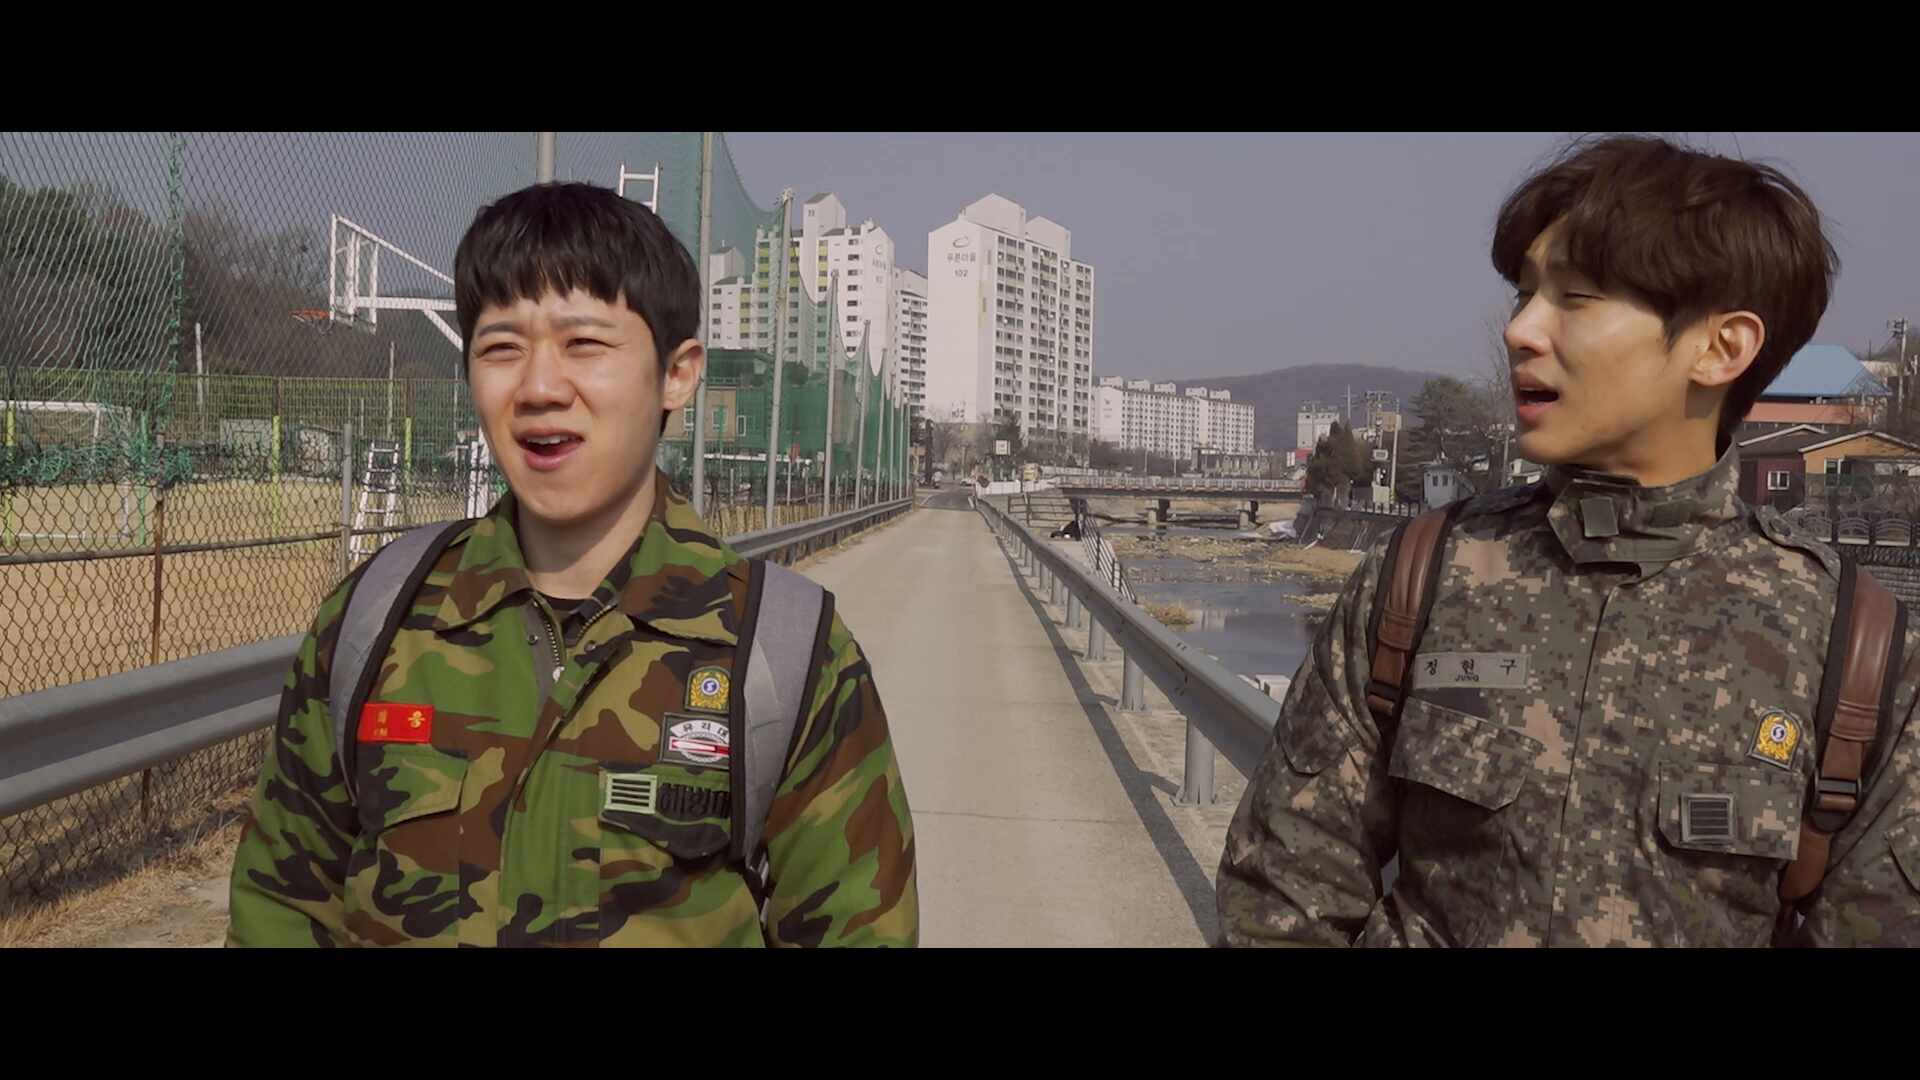 제 10회 영상왕 콘테스트 공모전 - 전승훈 - 버블게임